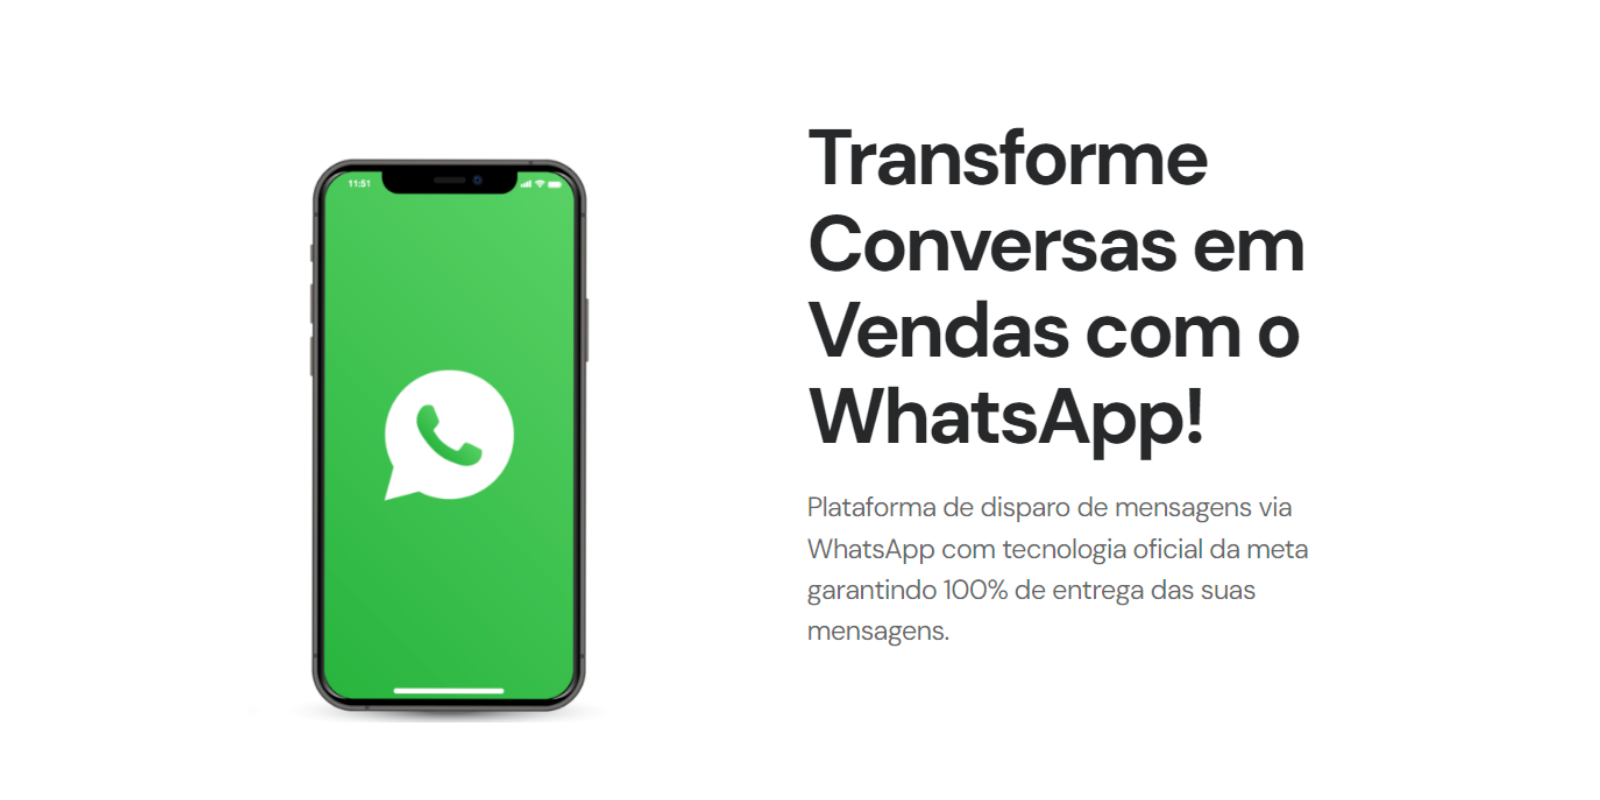 WhatsApp em Massa by Mensagex